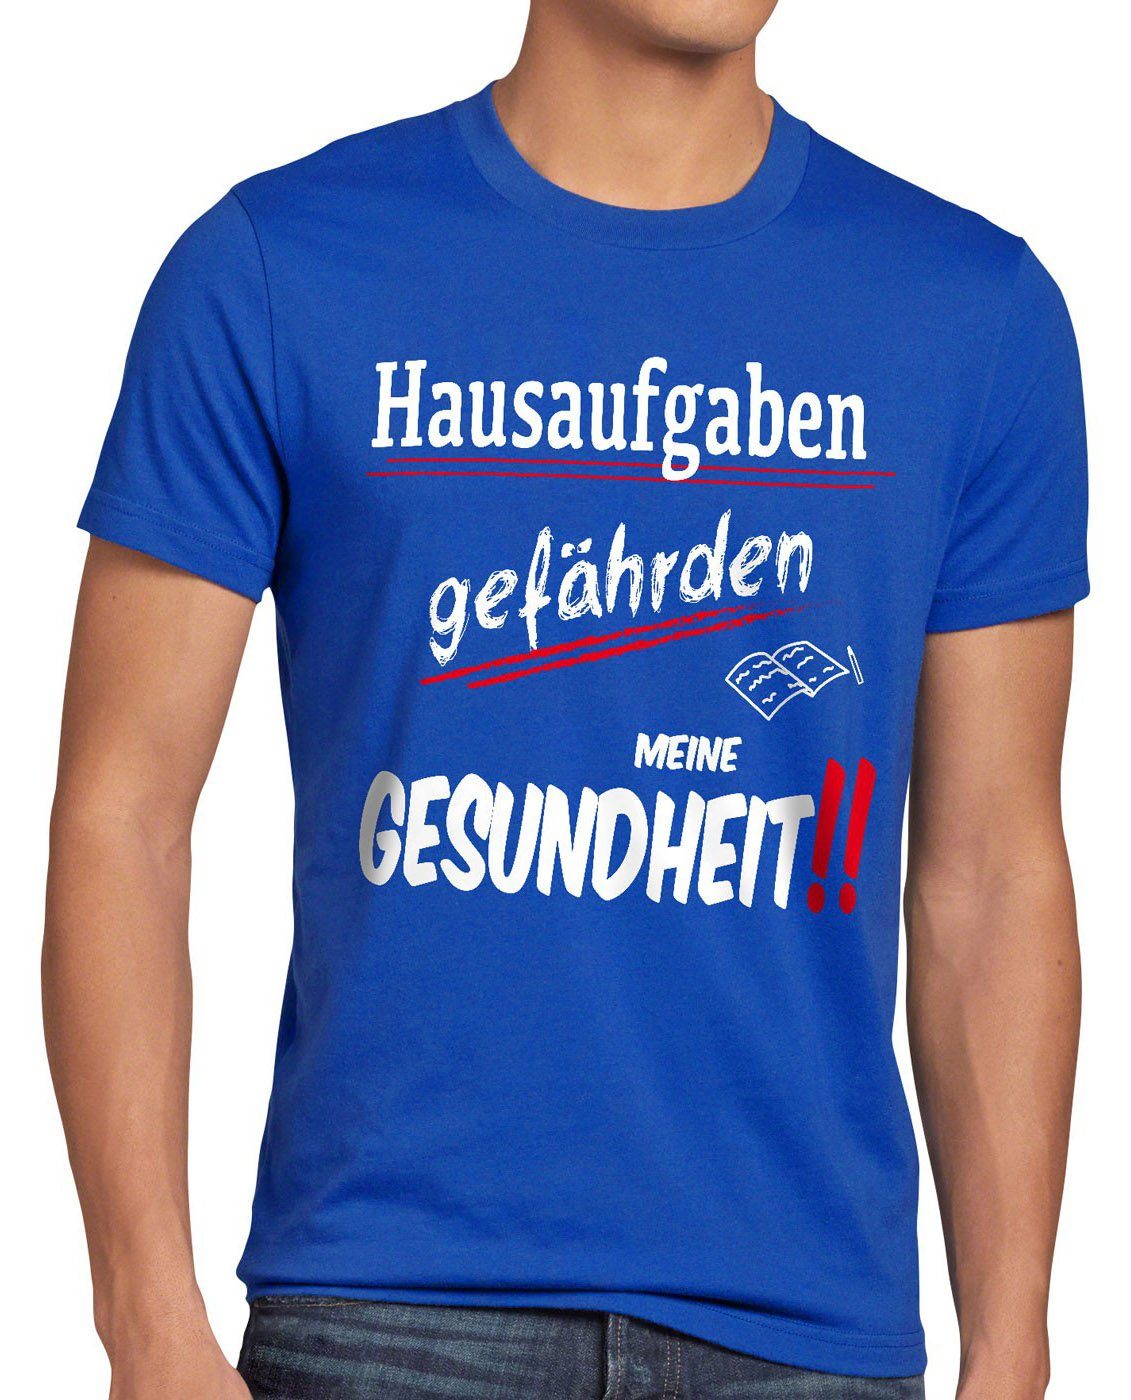 style3 Print-Shirt Herren T-Shirt Hausaufgaben gefährden Gesundheit Sprüche Fun schule schüler uni blau